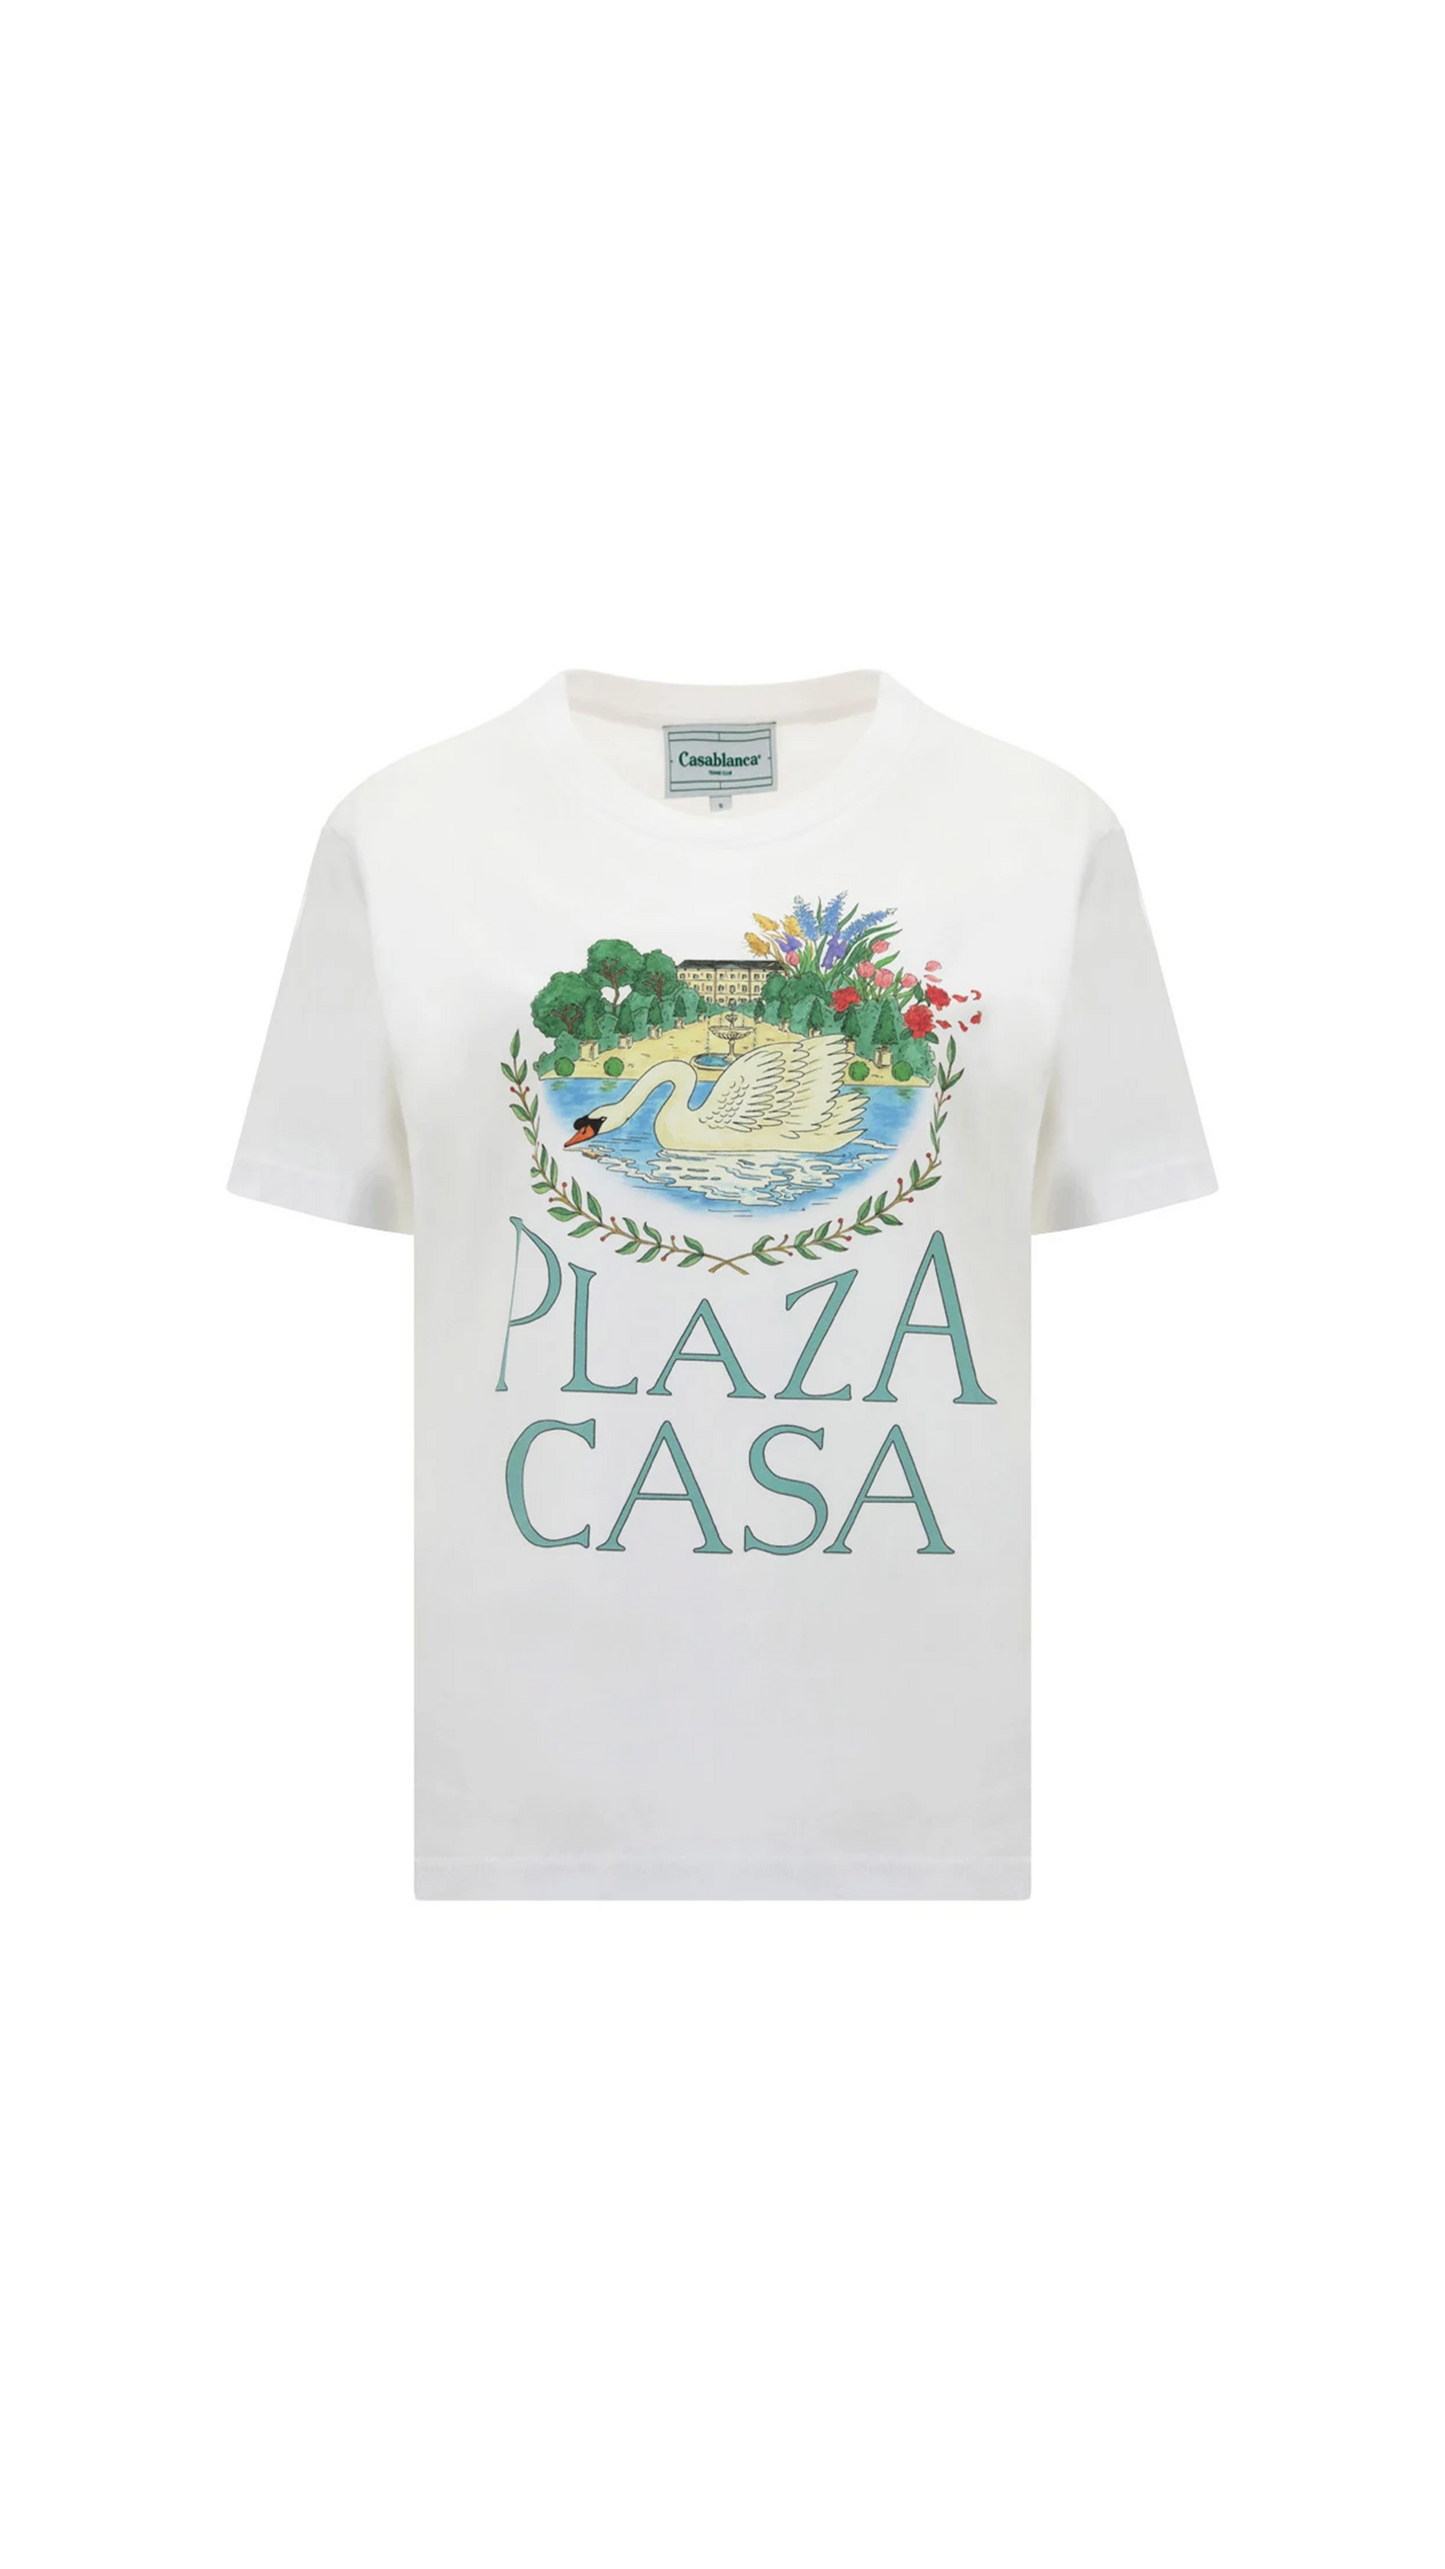 Plaza Casa Graphic T-Shirt - White